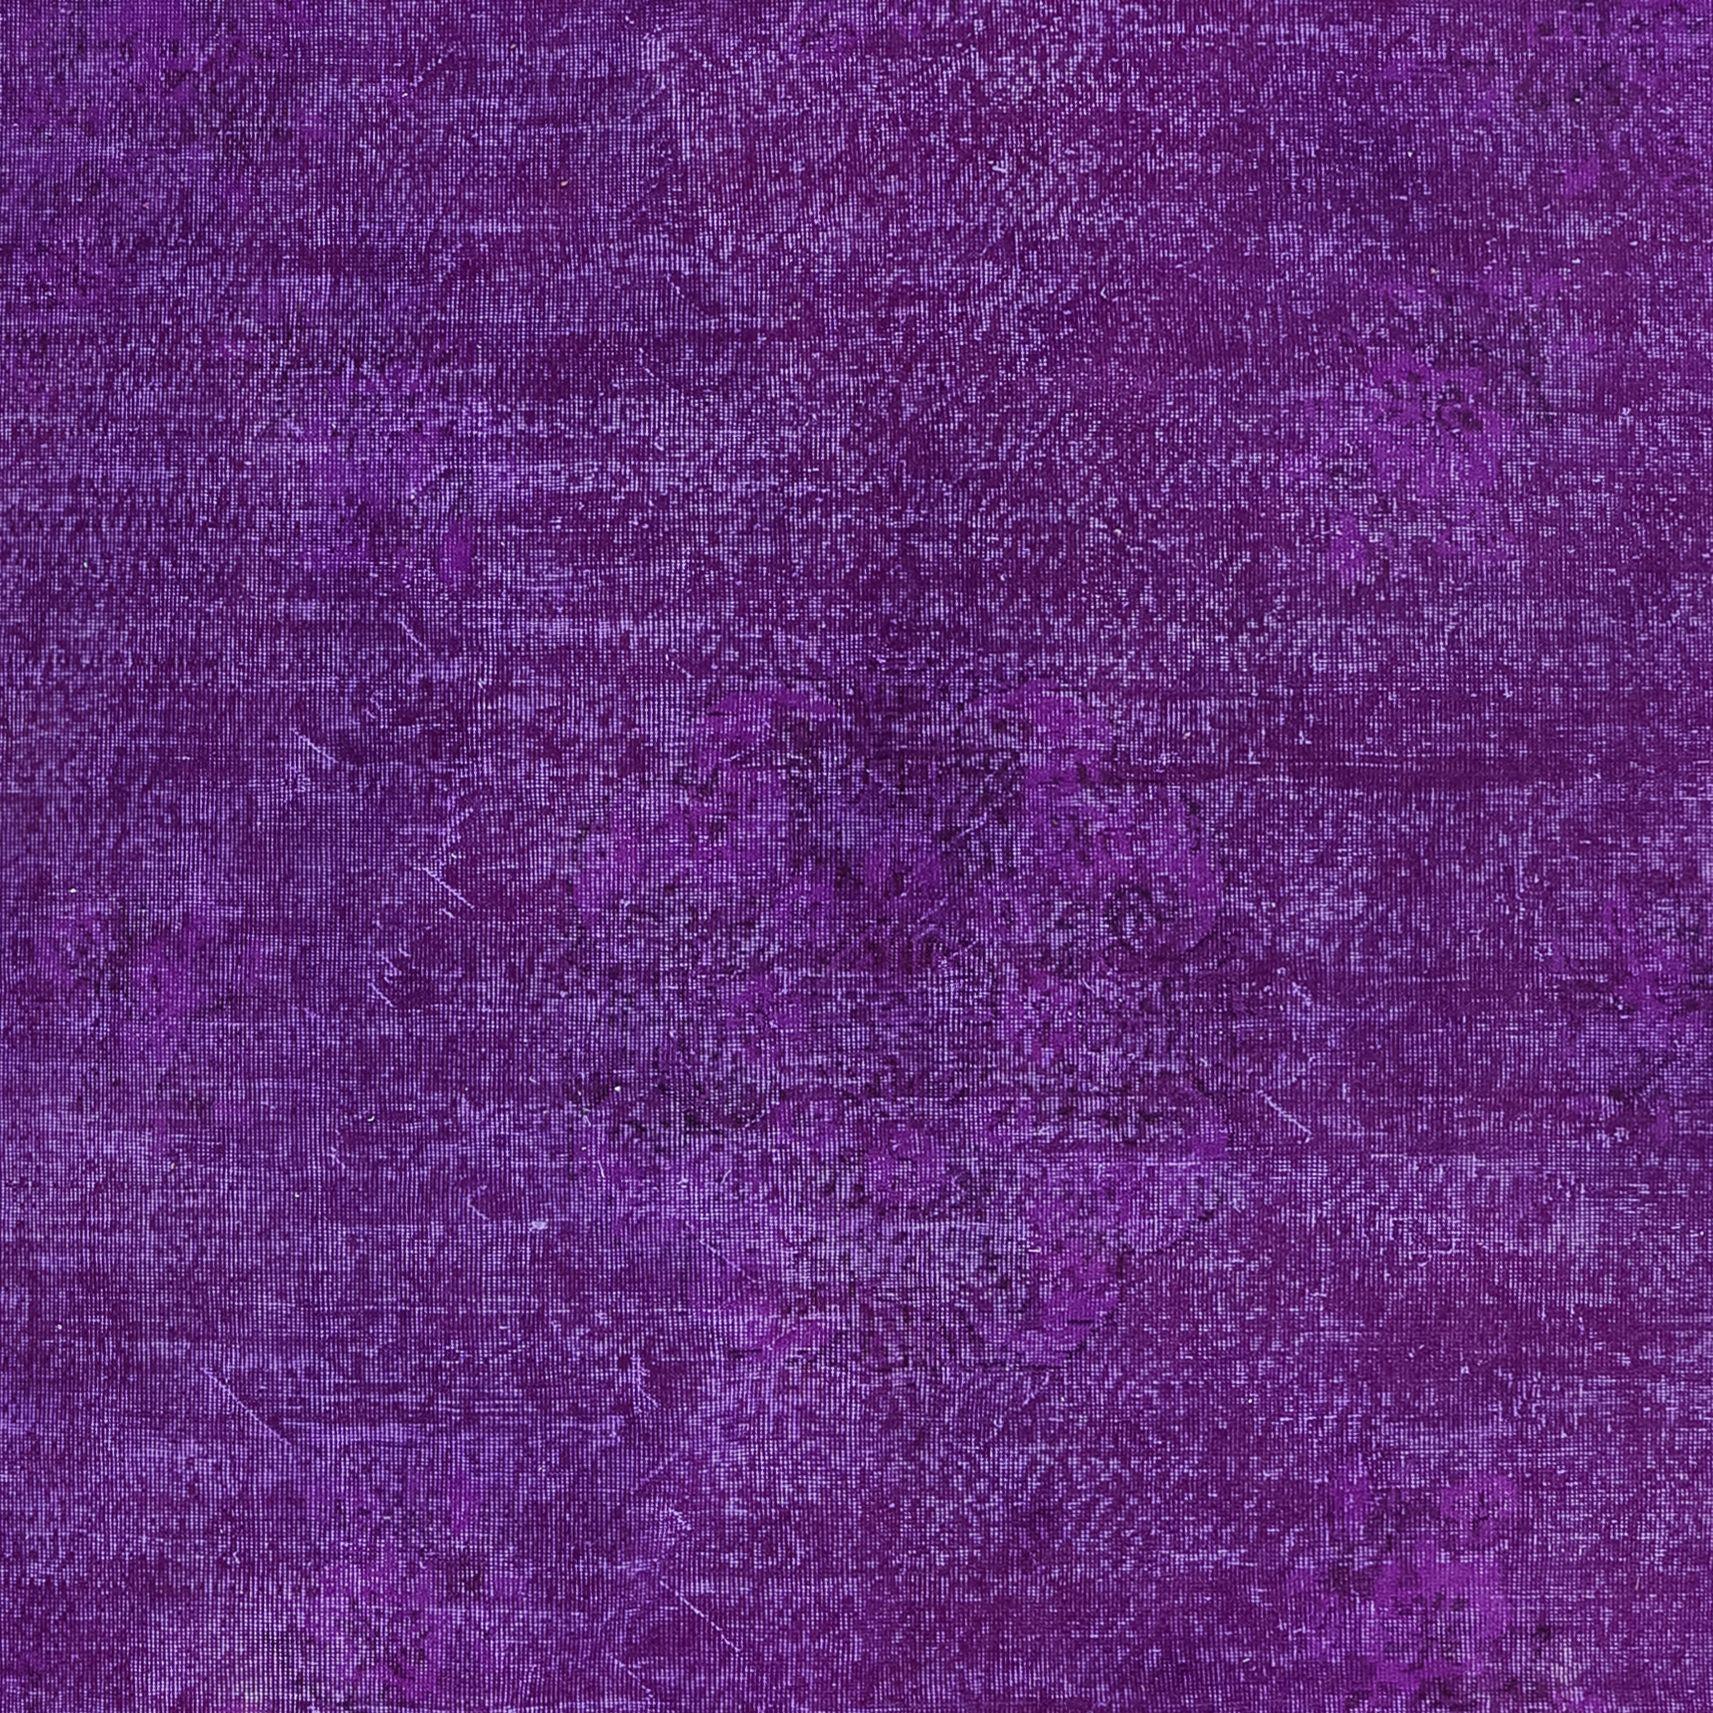 Hand-Woven 7.3x11 Ft Plain Purple Unique Handknotted Large Rug. Modern Turkish Bohem Carpet For Sale